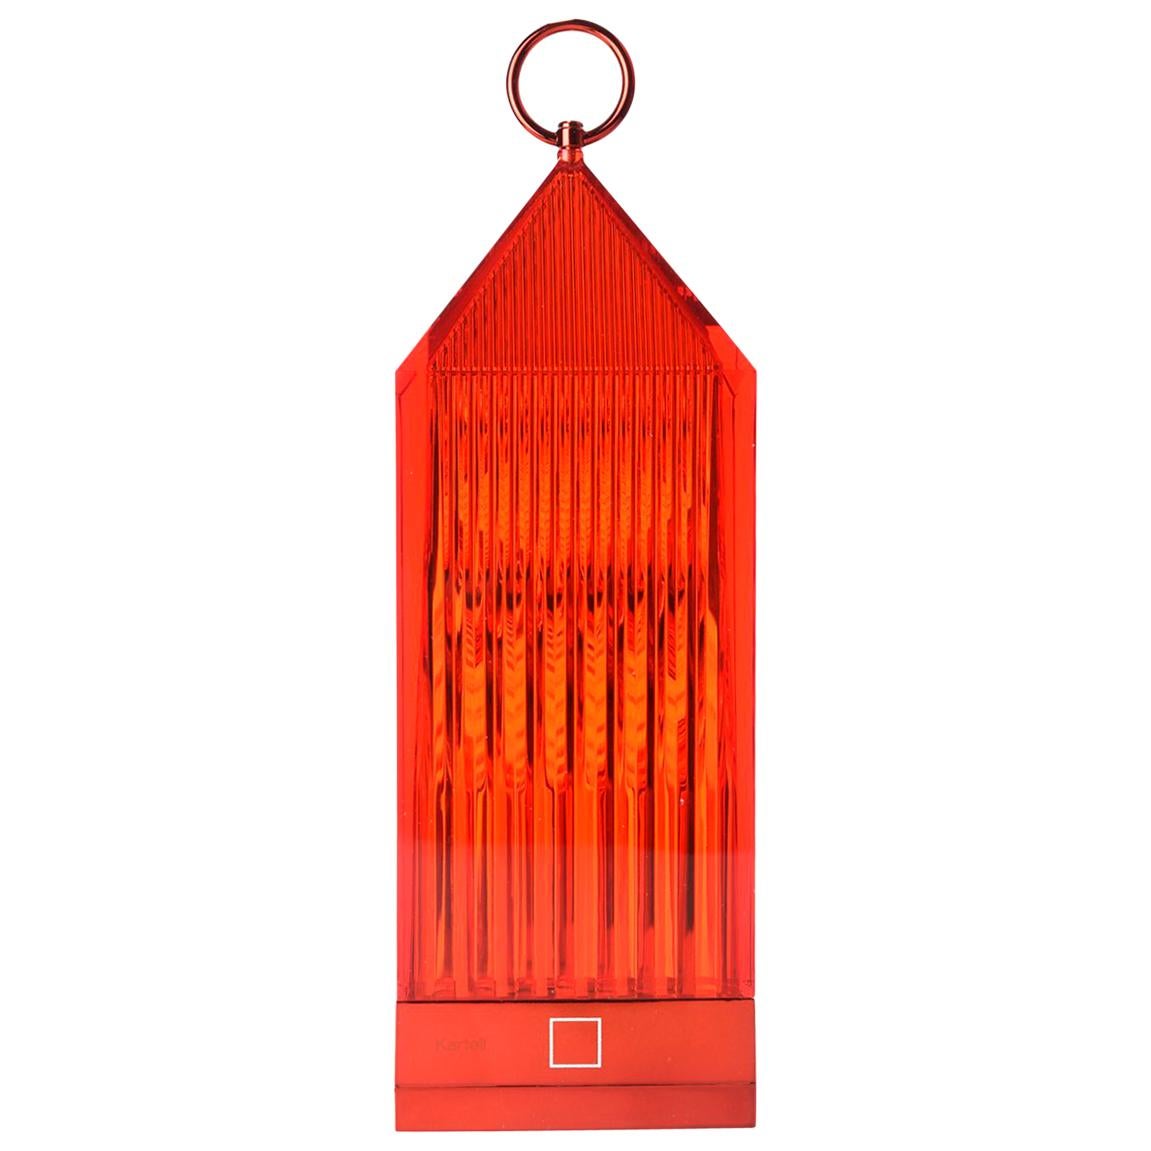 Set von 4 Kartell-Laternen-Tischlampen in Rot von Fabio Novembre